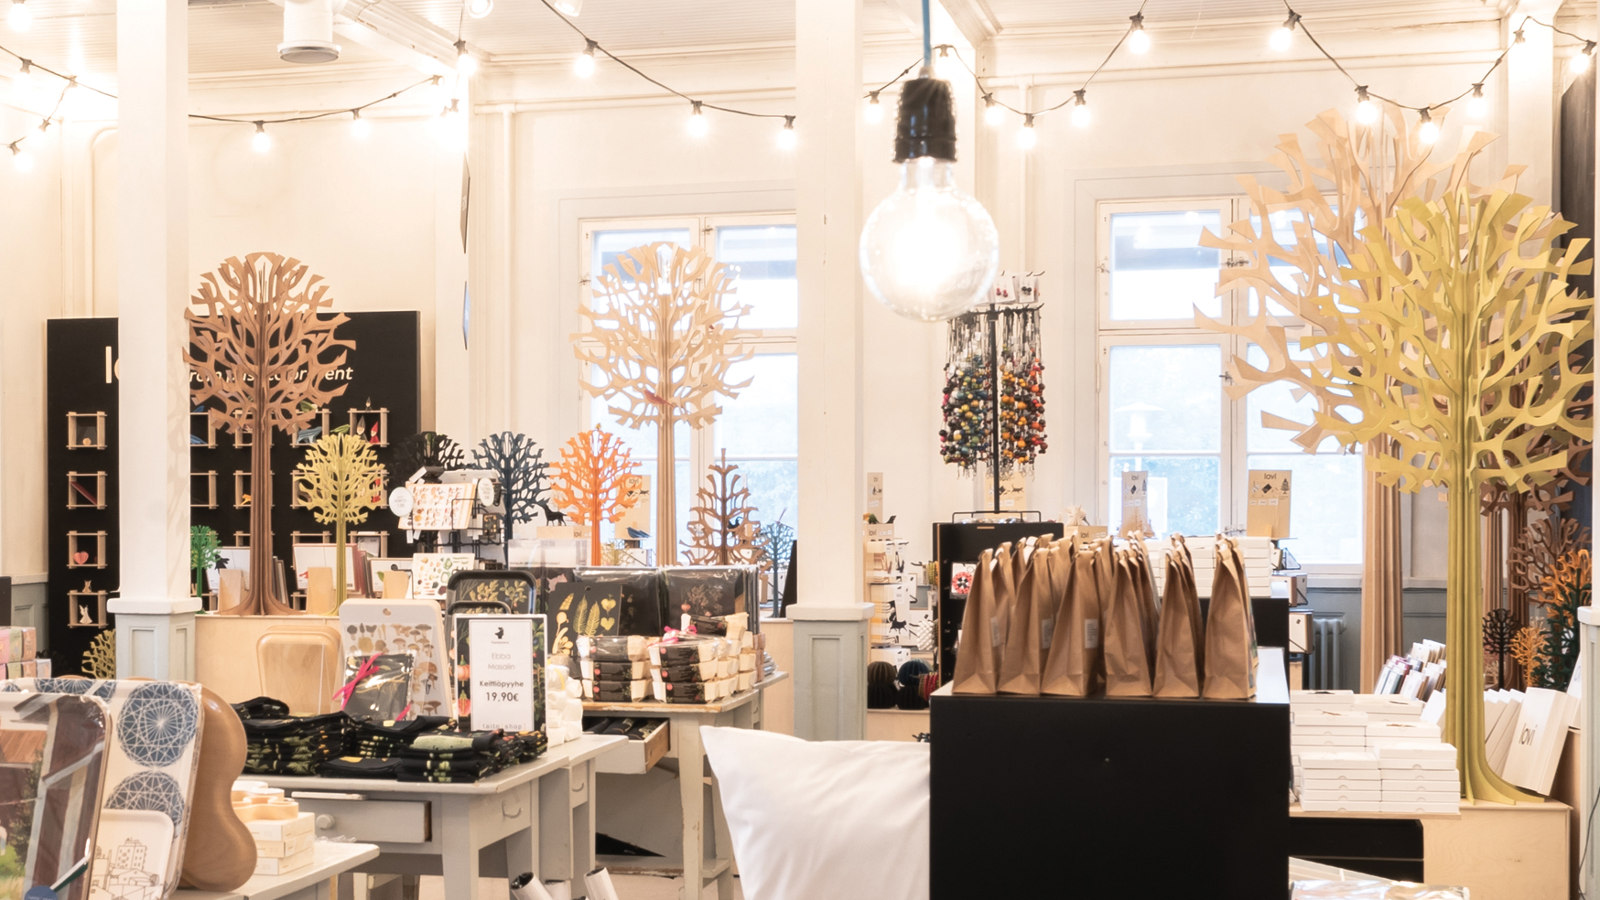 Kuvassa on Oulun Taito-shop -myymälä ja siinä on esillä erilaisia käsityötuotteita sekä puusta tehtyjä puita. Myymälä on kauniisti valaistu ja ilmeeltään valoisa.   